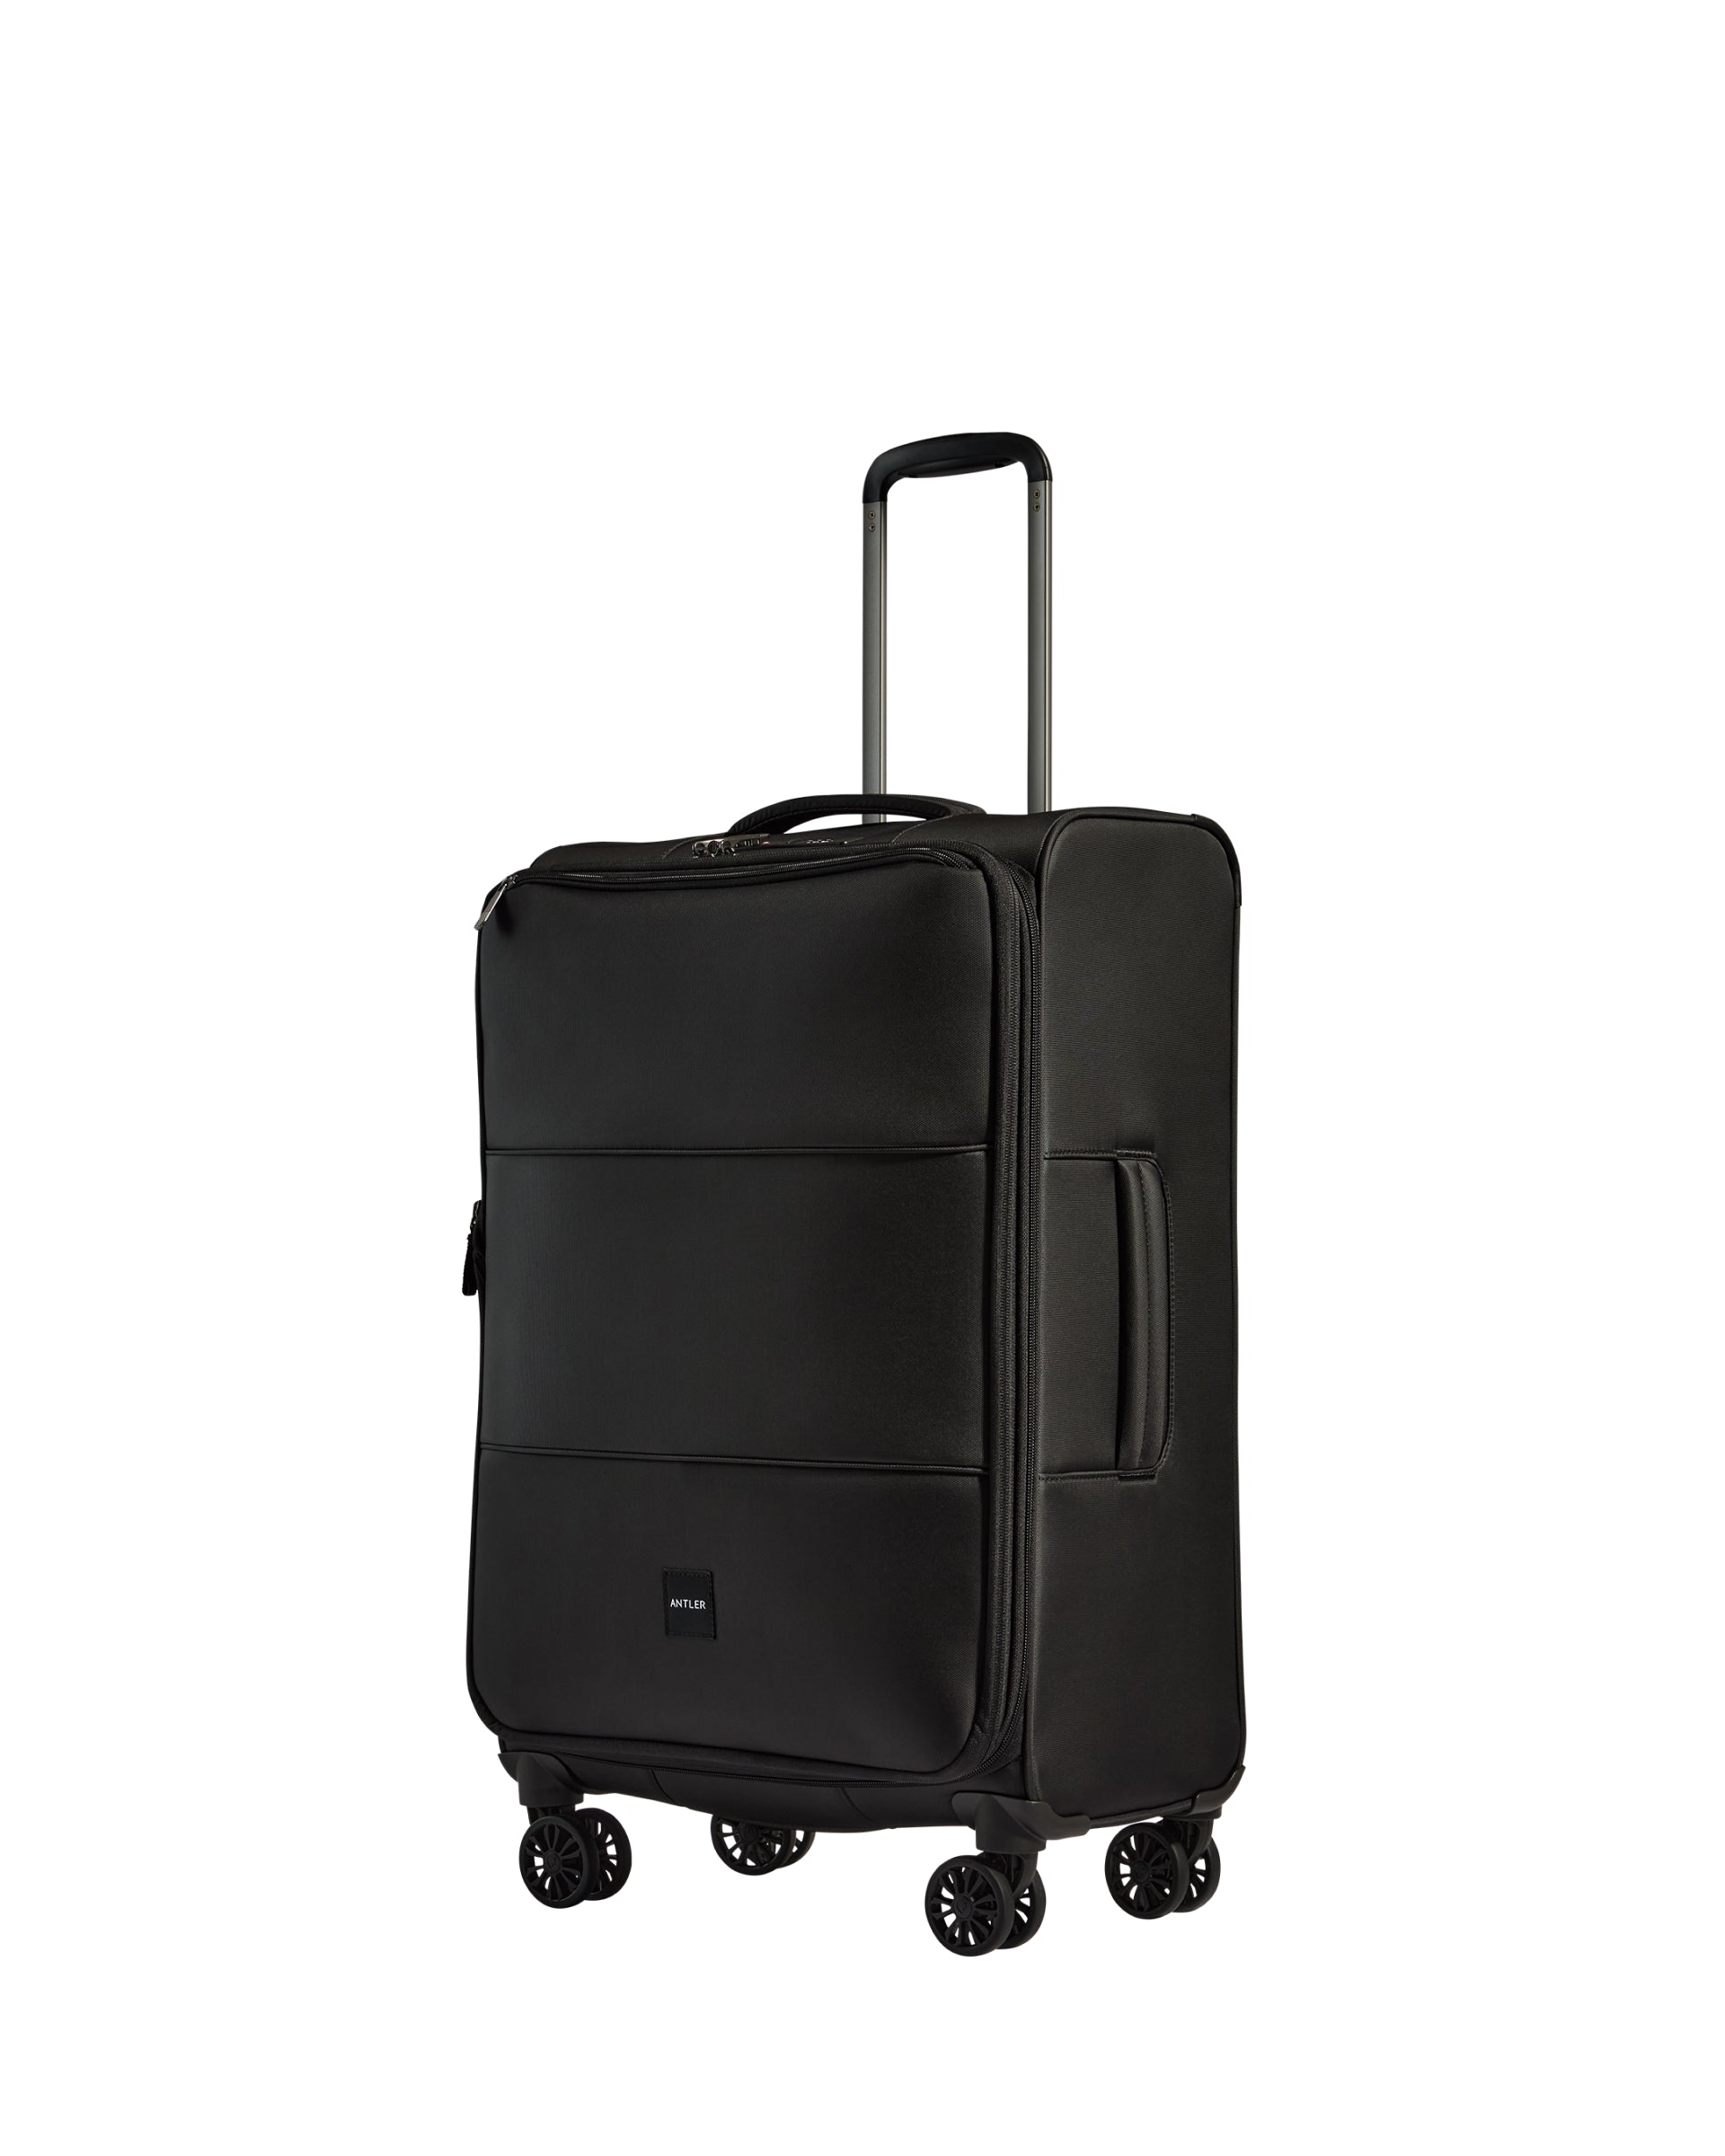 View Antler Soft Stripe Medium Suitcase In Black Size 28cm x 71cm x 435cm information